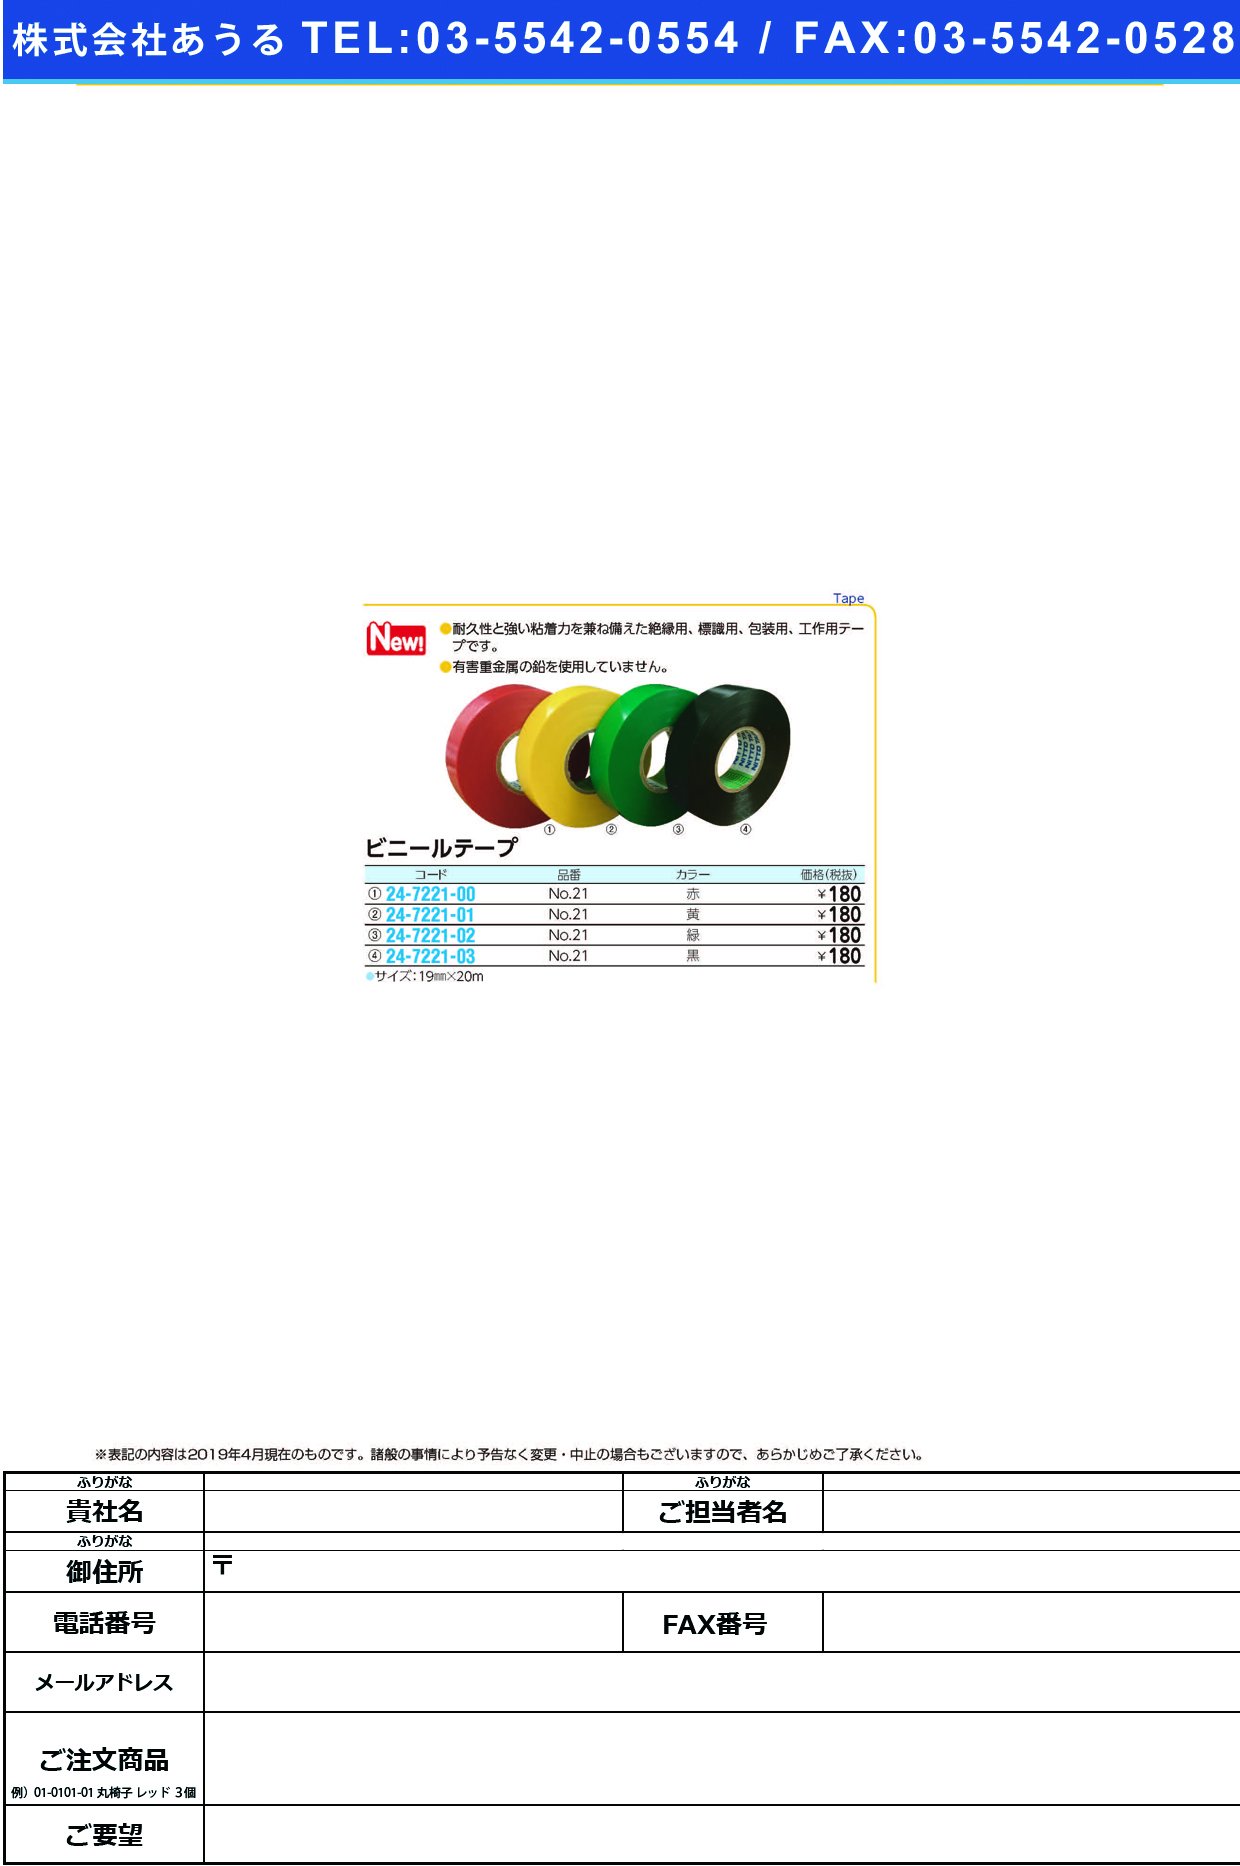 (24-7221-03)ビニールテープNO.21(ｸﾛ)19MMX20M ﾋﾞﾆｰﾙﾃｰﾌﾟ(コクゴ)【1巻単位】【2019年カタログ商品】